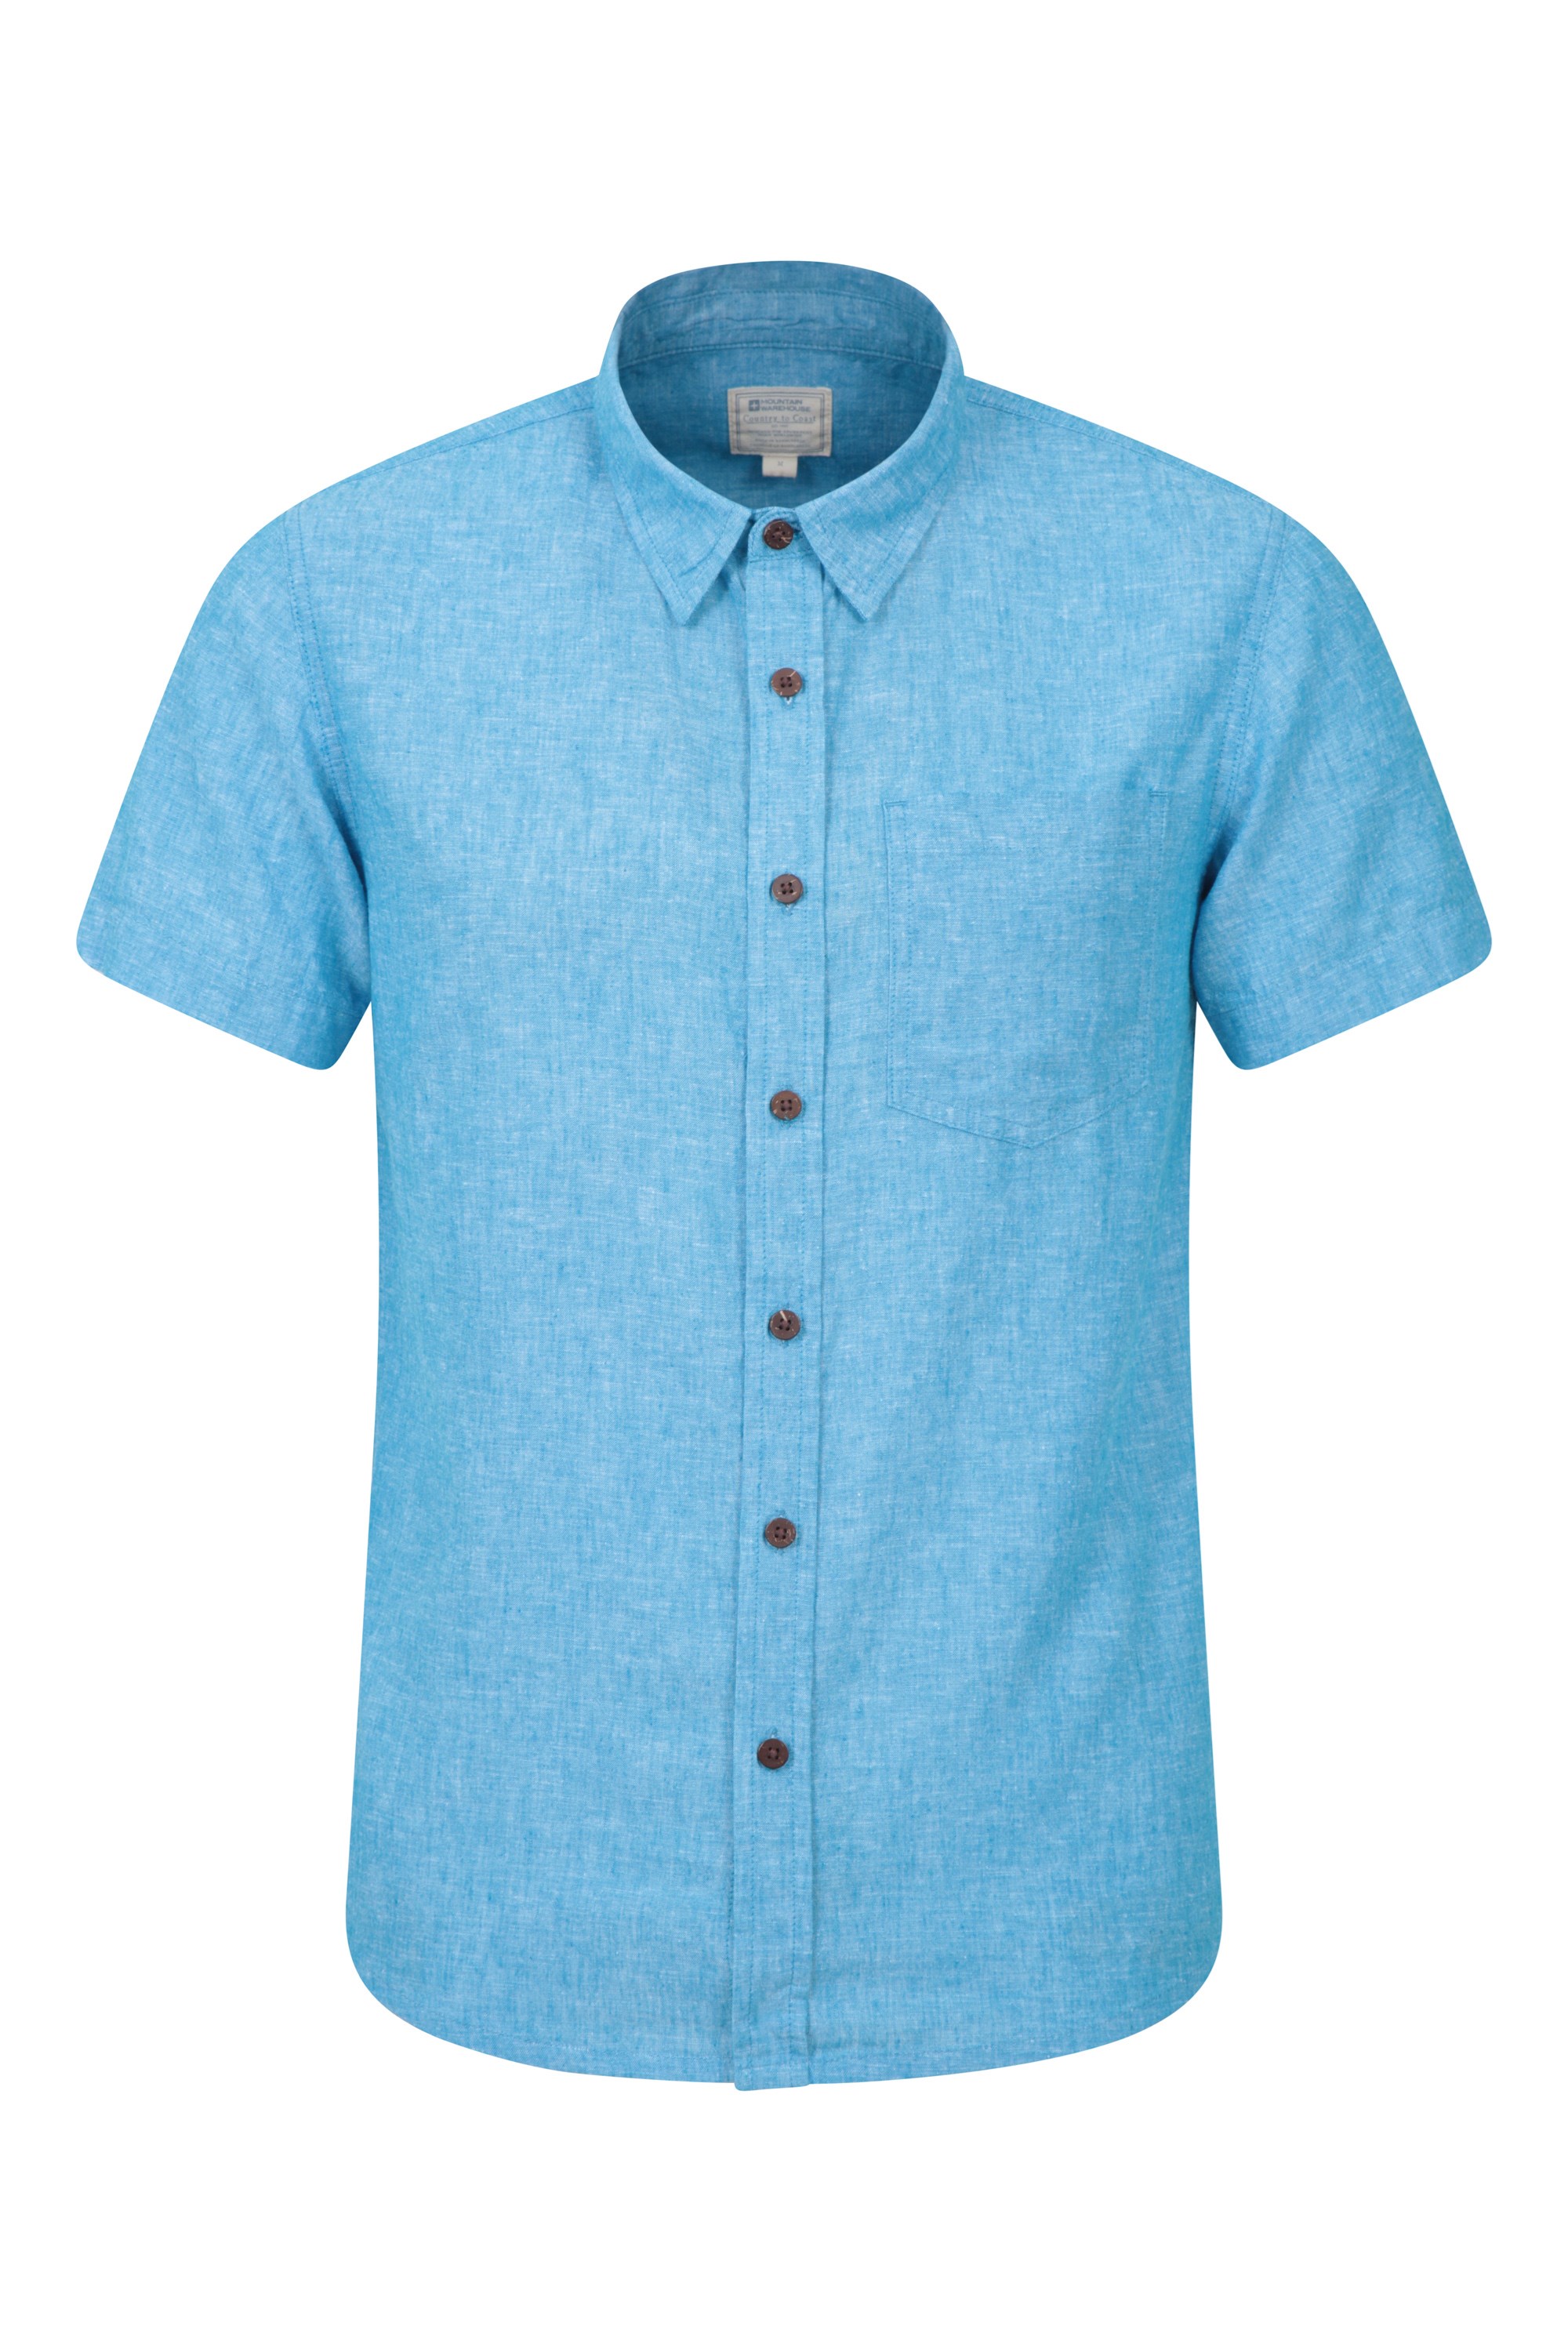 Mountain Warehouse Lowe Cotton Linen Mens Shirt Holiday Lightweight Top 